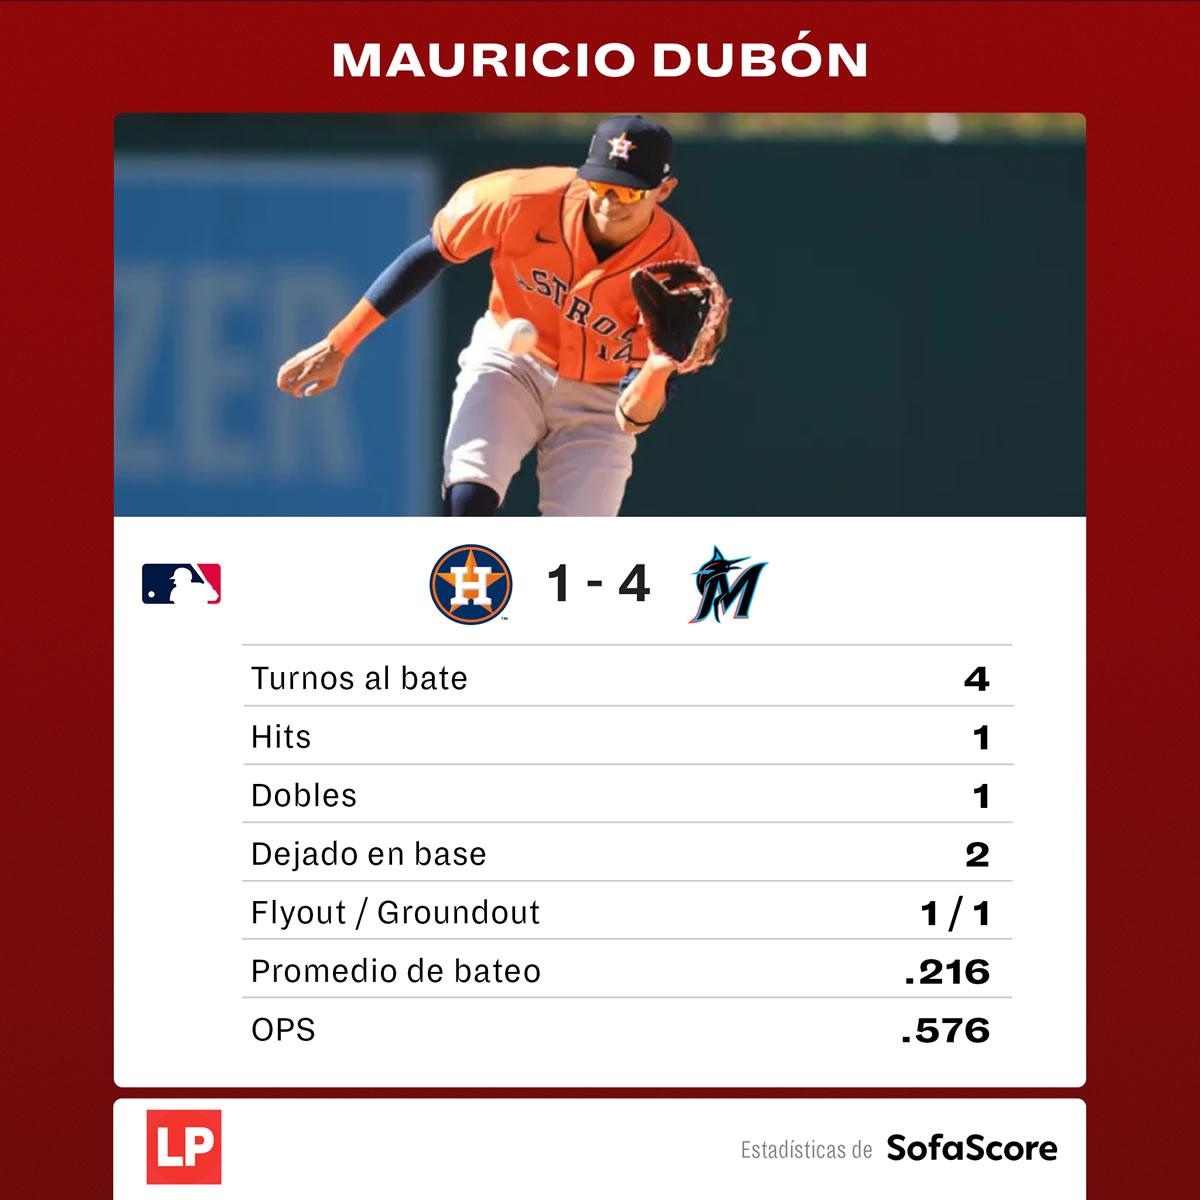 Las datos de Mauricio Dubón en el juego contra los Marlins de Miami.